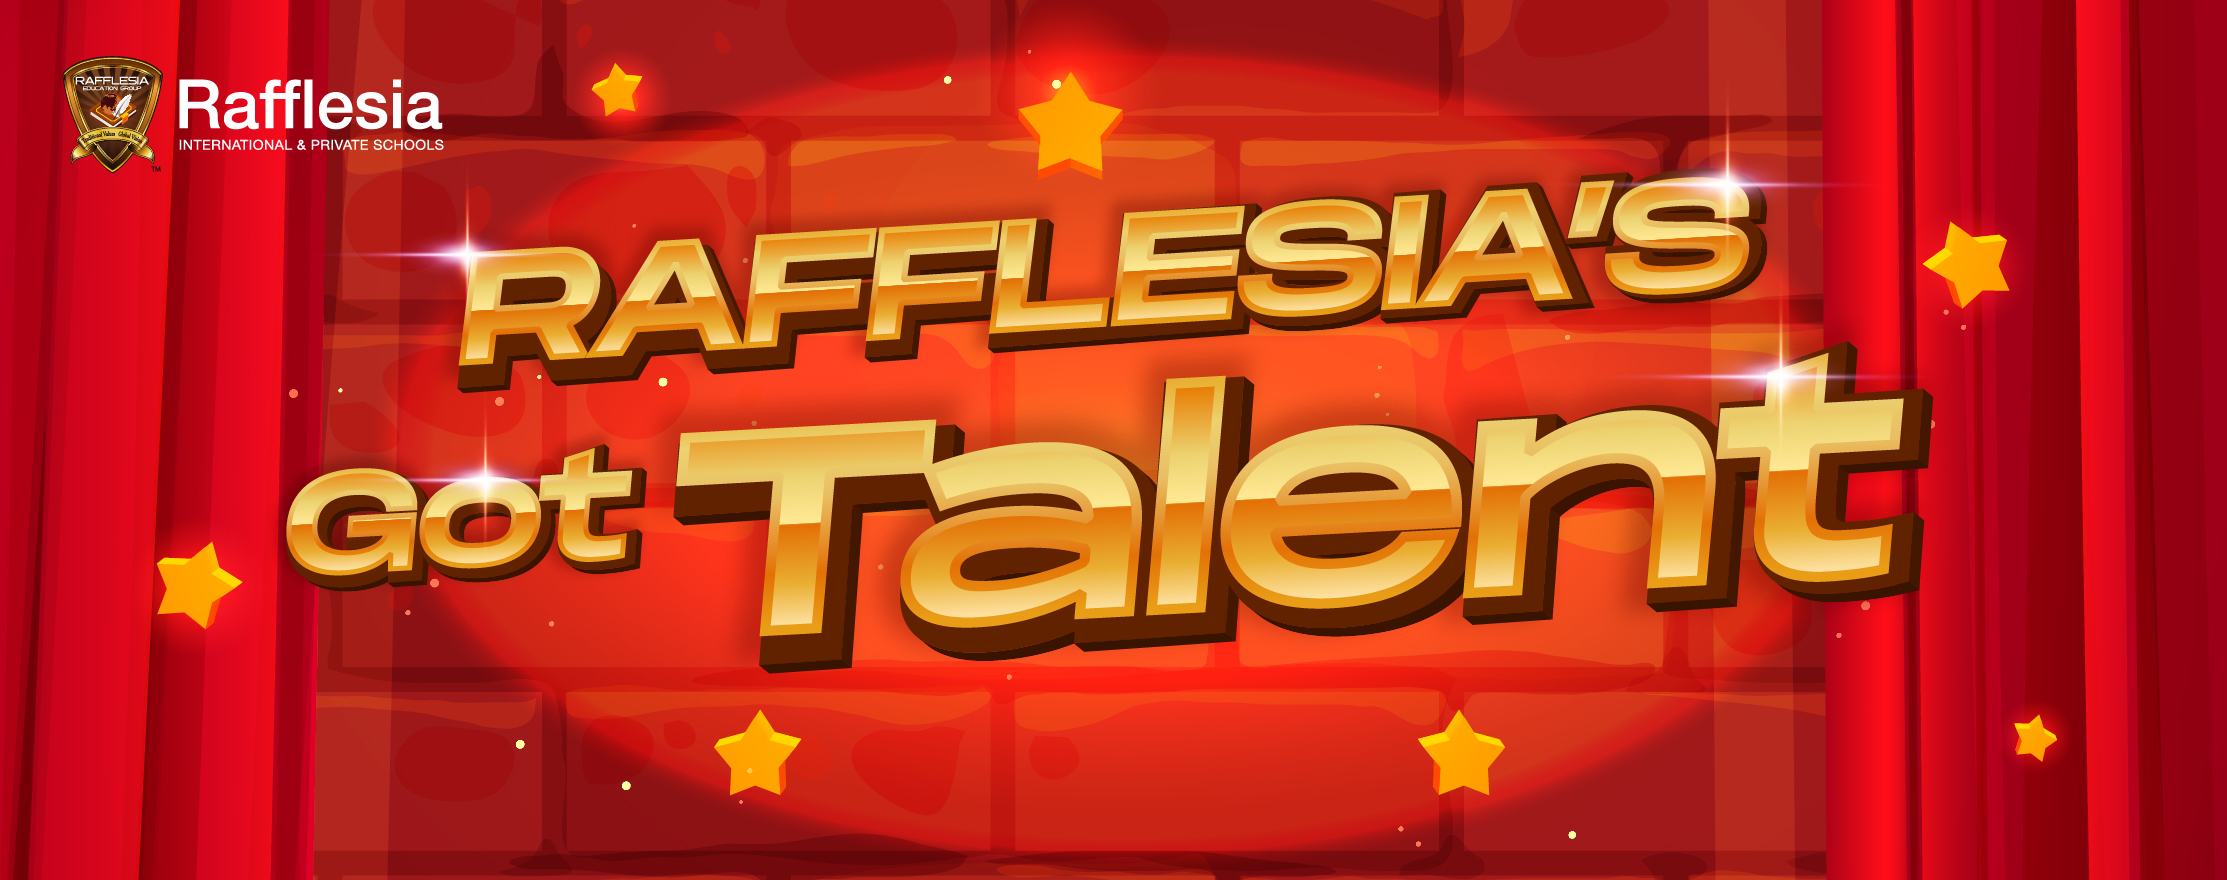 Rafflesia’s Got Talent